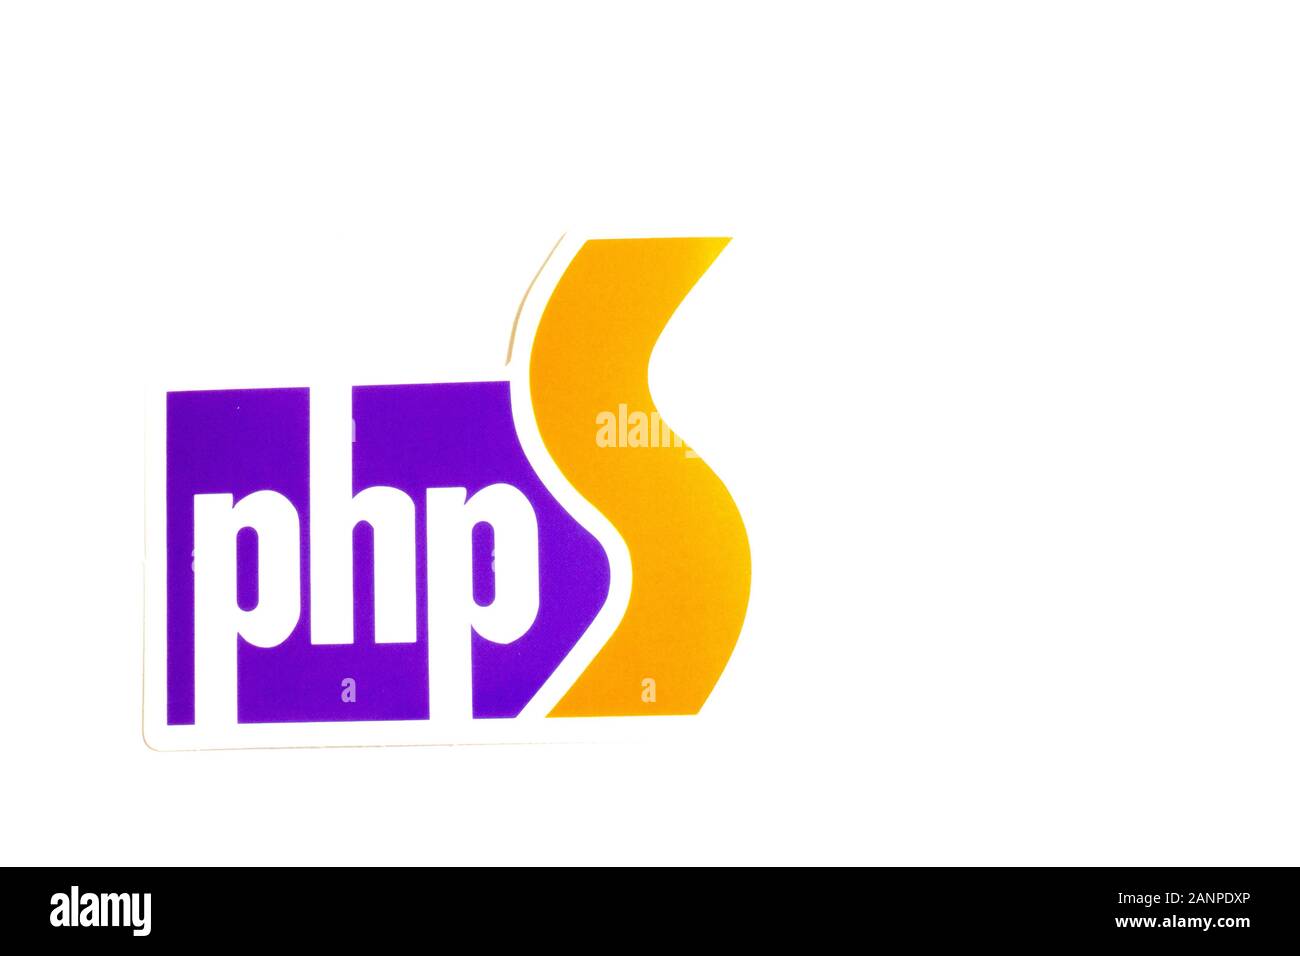 Los Angeles, Californie, États-Unis - 17 janvier 2020: Logo PHP avec espace de copie, éditorial illustratif Banque D'Images